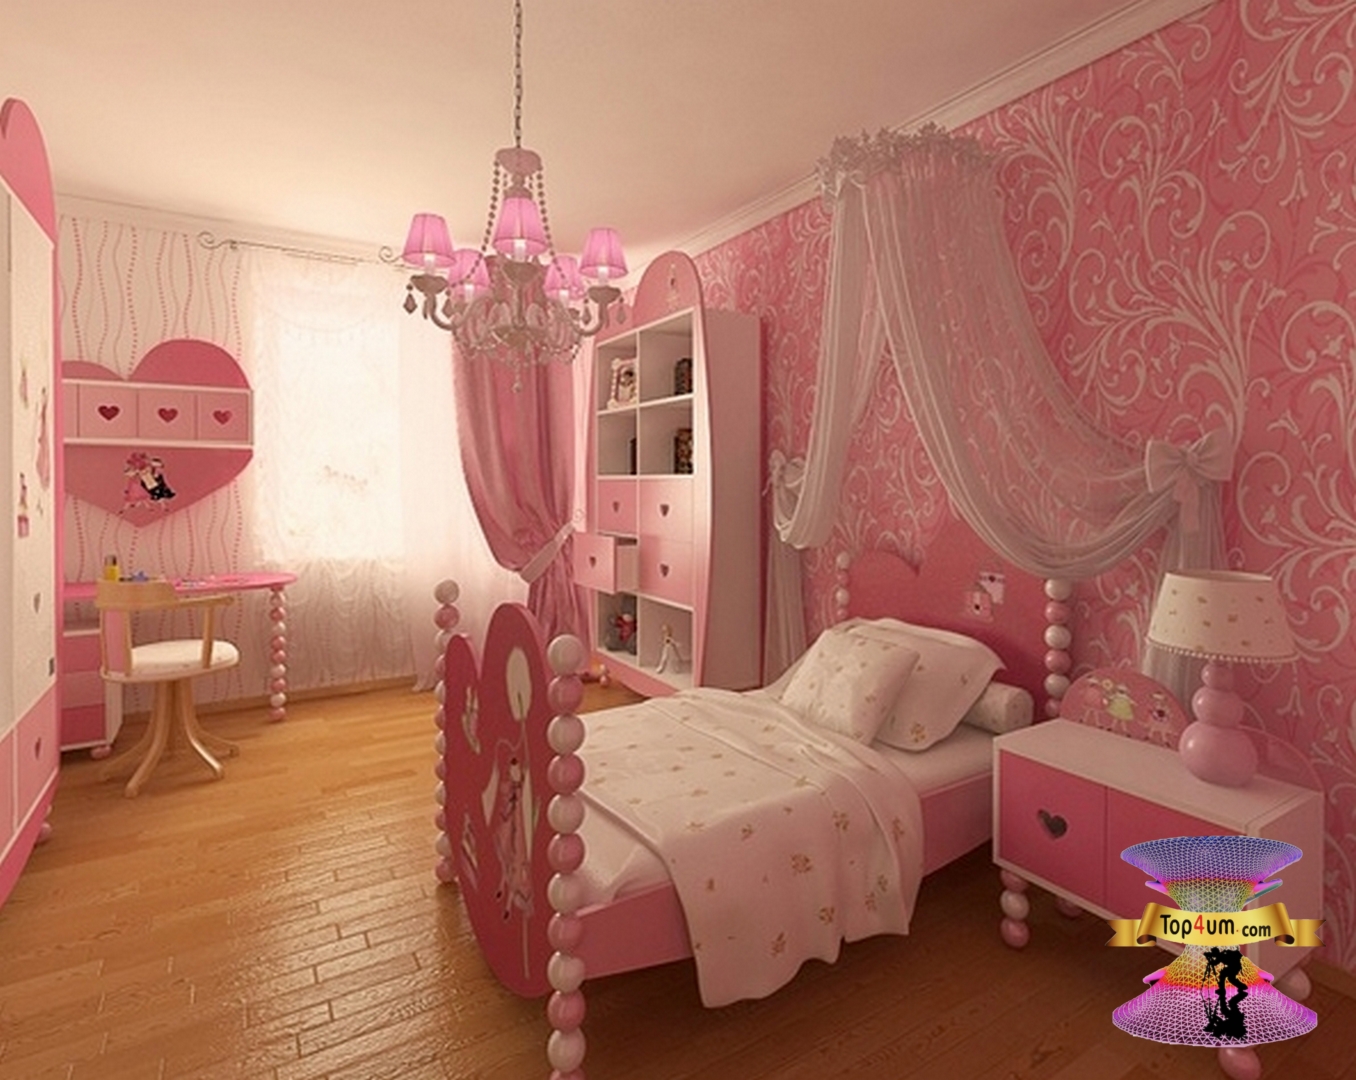 1 комнатка. Детские спальни для девочек. Детские комнаты для девочек. Красивая детская комната девочке. Интерьер детской комнаты девочке.